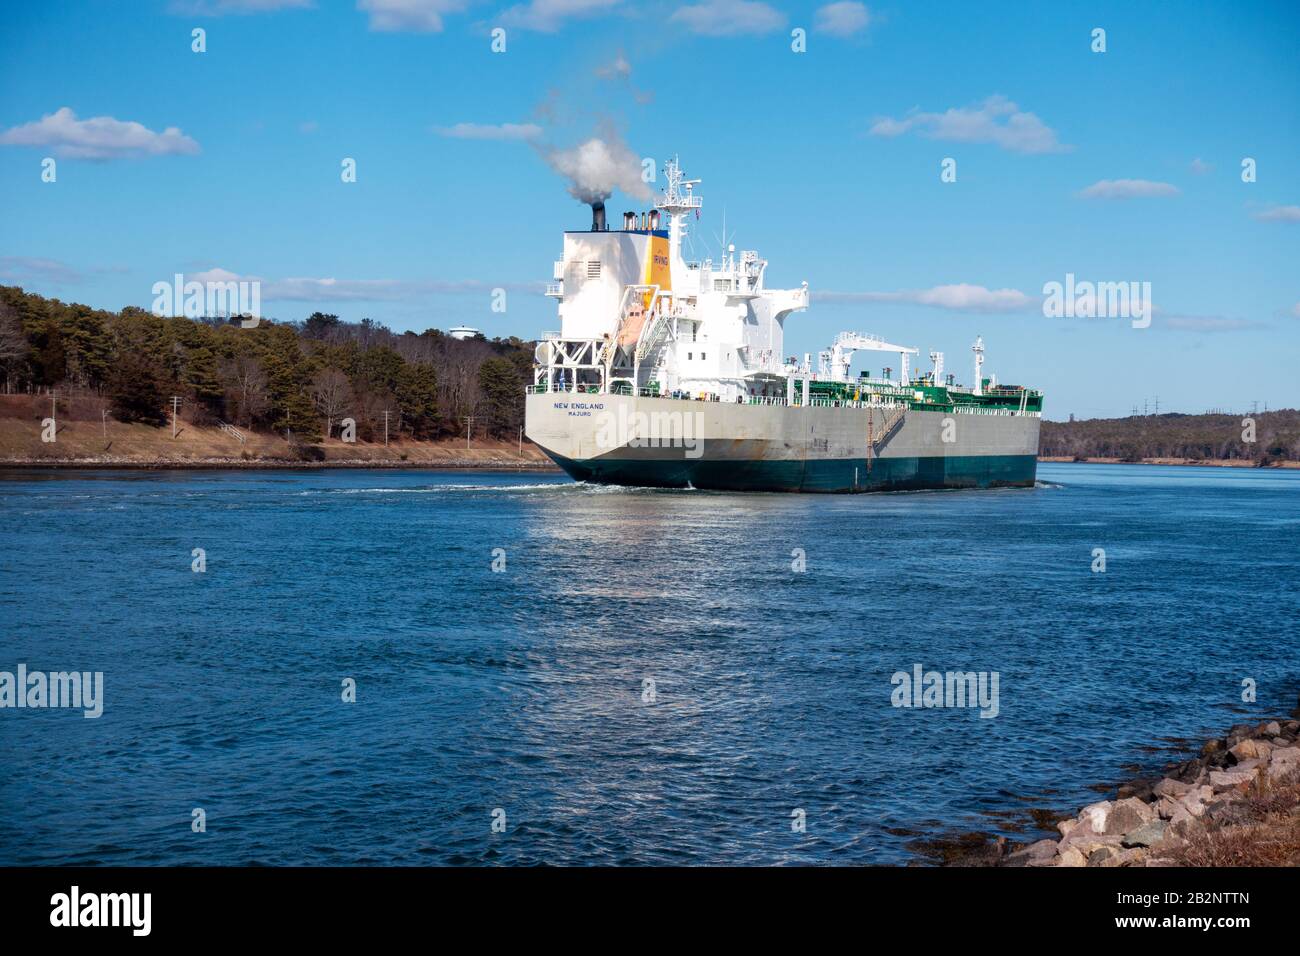 Irving petrolero Majuro, construido en 2005, en el Canal de Cape Cod. El barco tiene 183 metros de largo por 27.39 metros de ancho Foto de stock